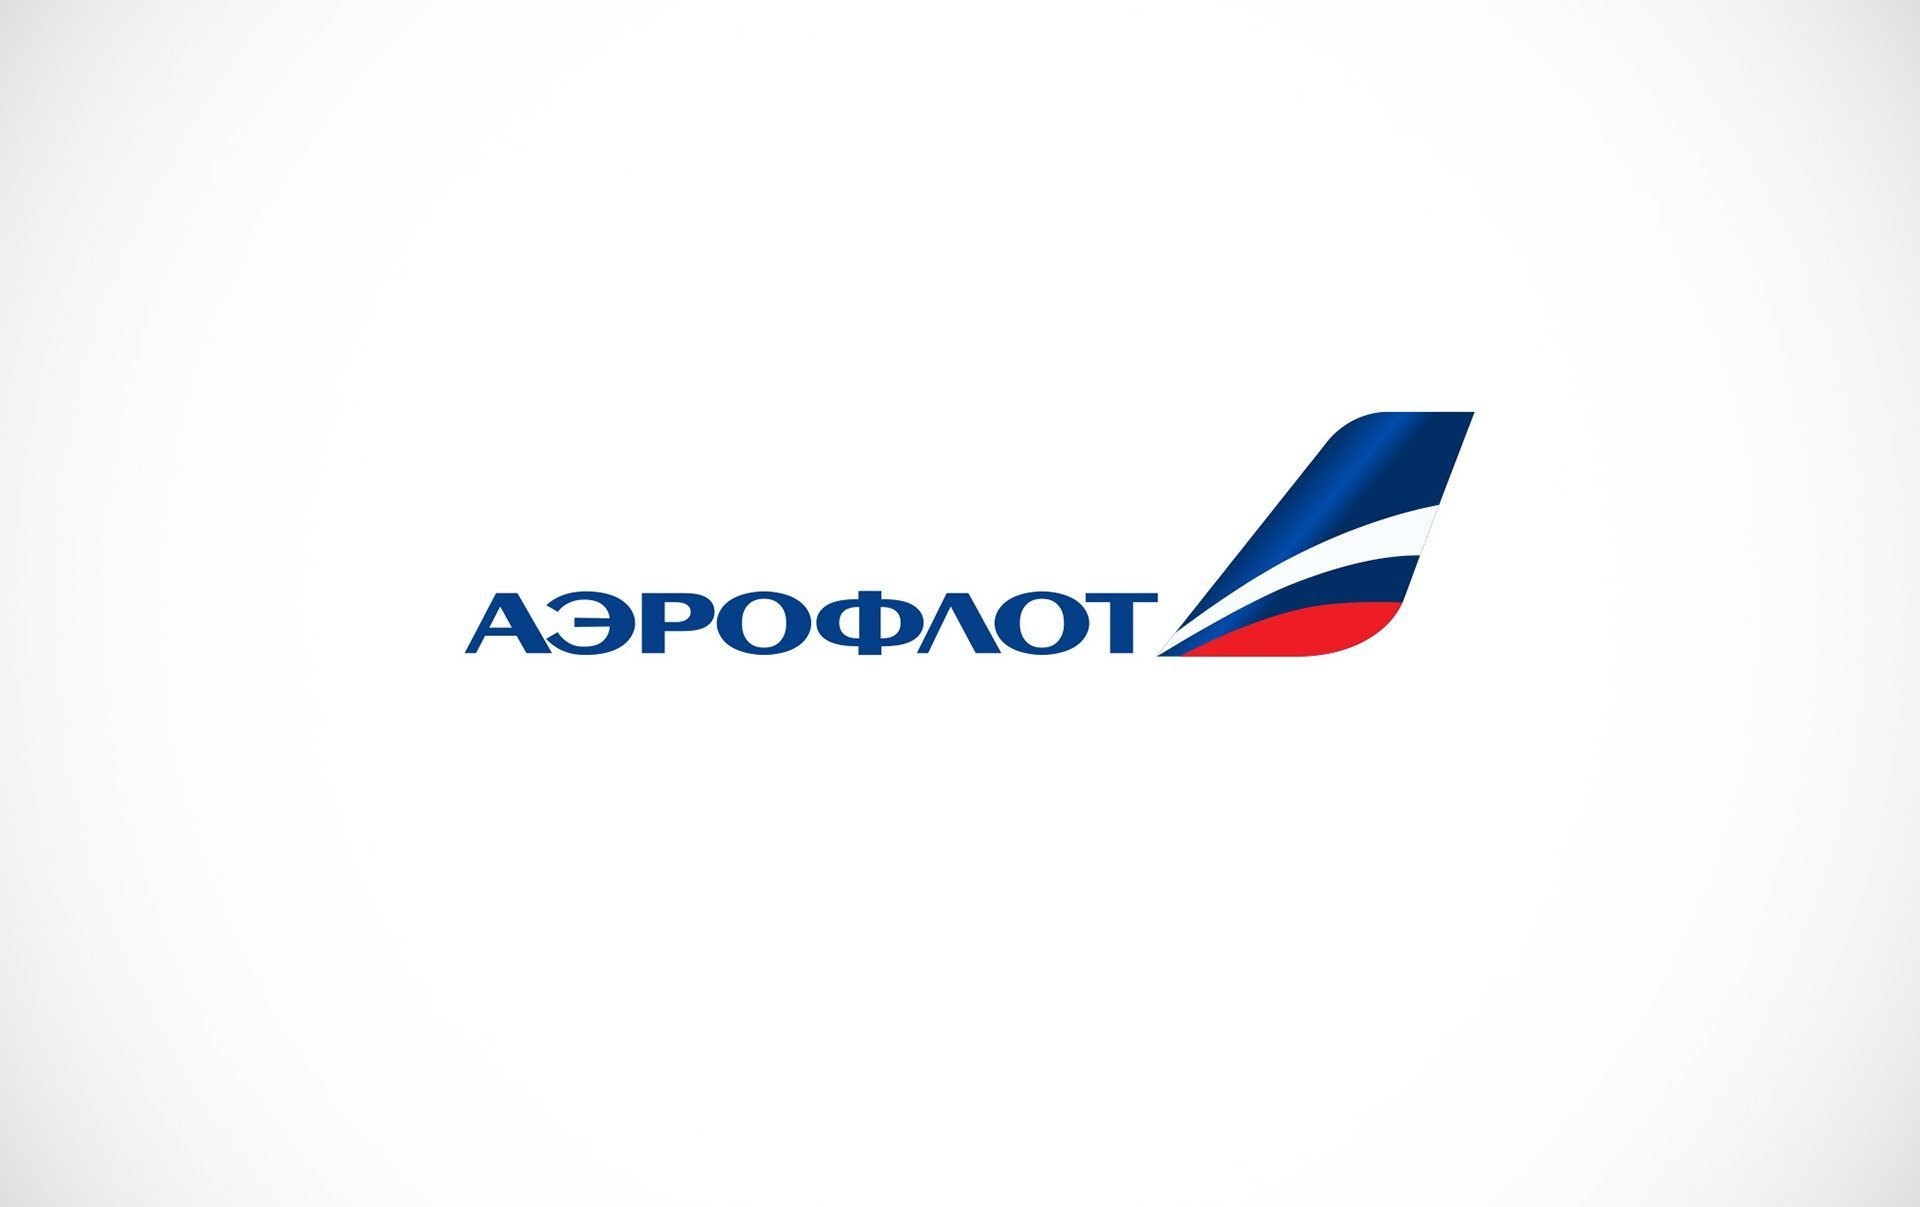 1м аэрофлот. Аэрофлот логотип. Аэрофлот логотип 2021. Аэрофлот российские авиалинии логотип. Значок компании Аэрофлот.